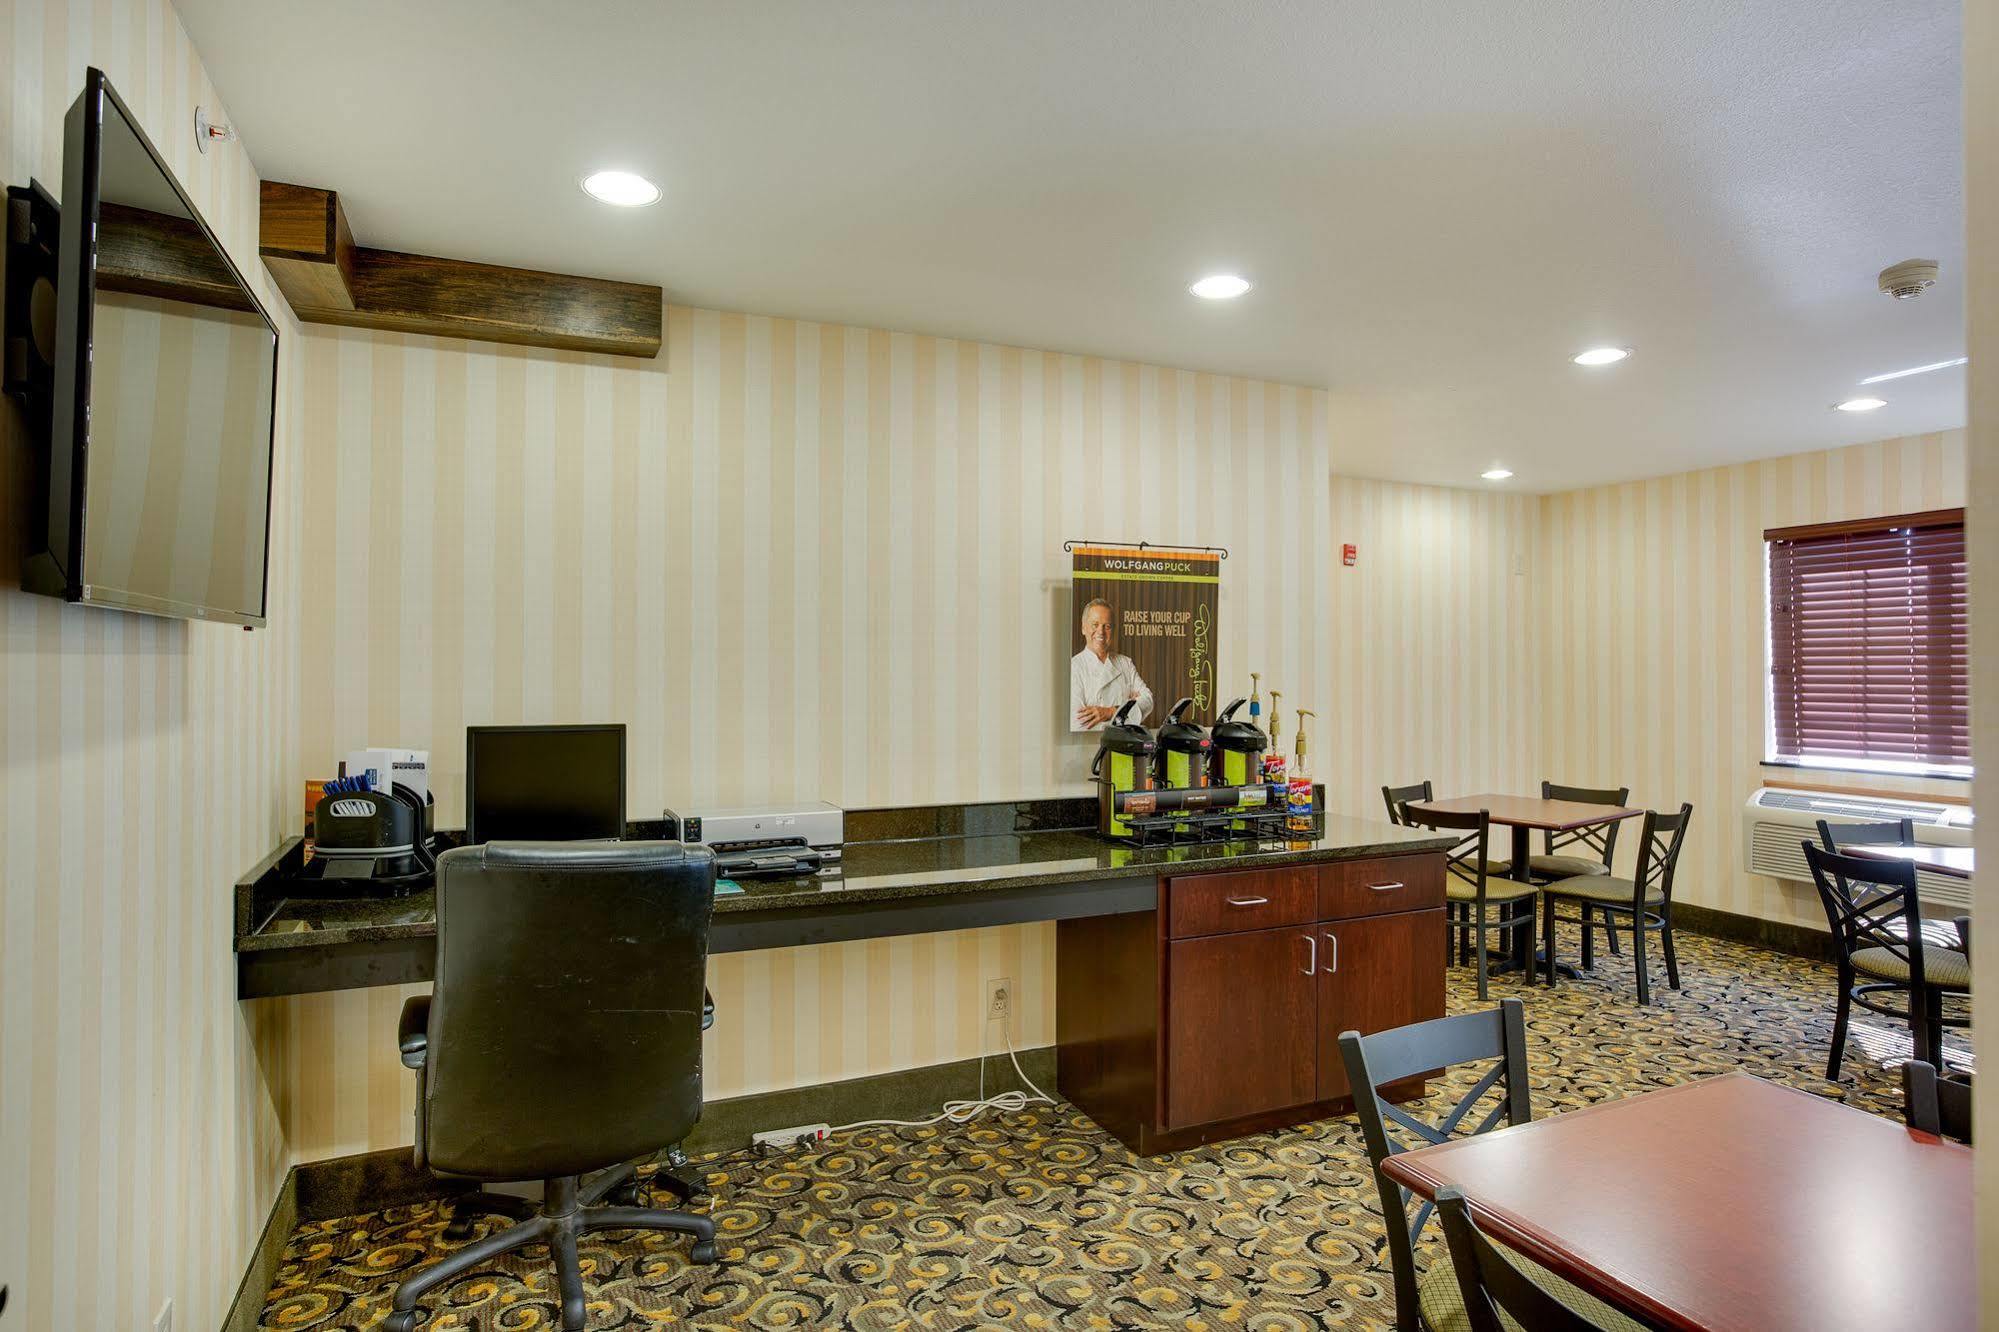 Cobblestone Inn & Suites - Clintonville Exteriér fotografie